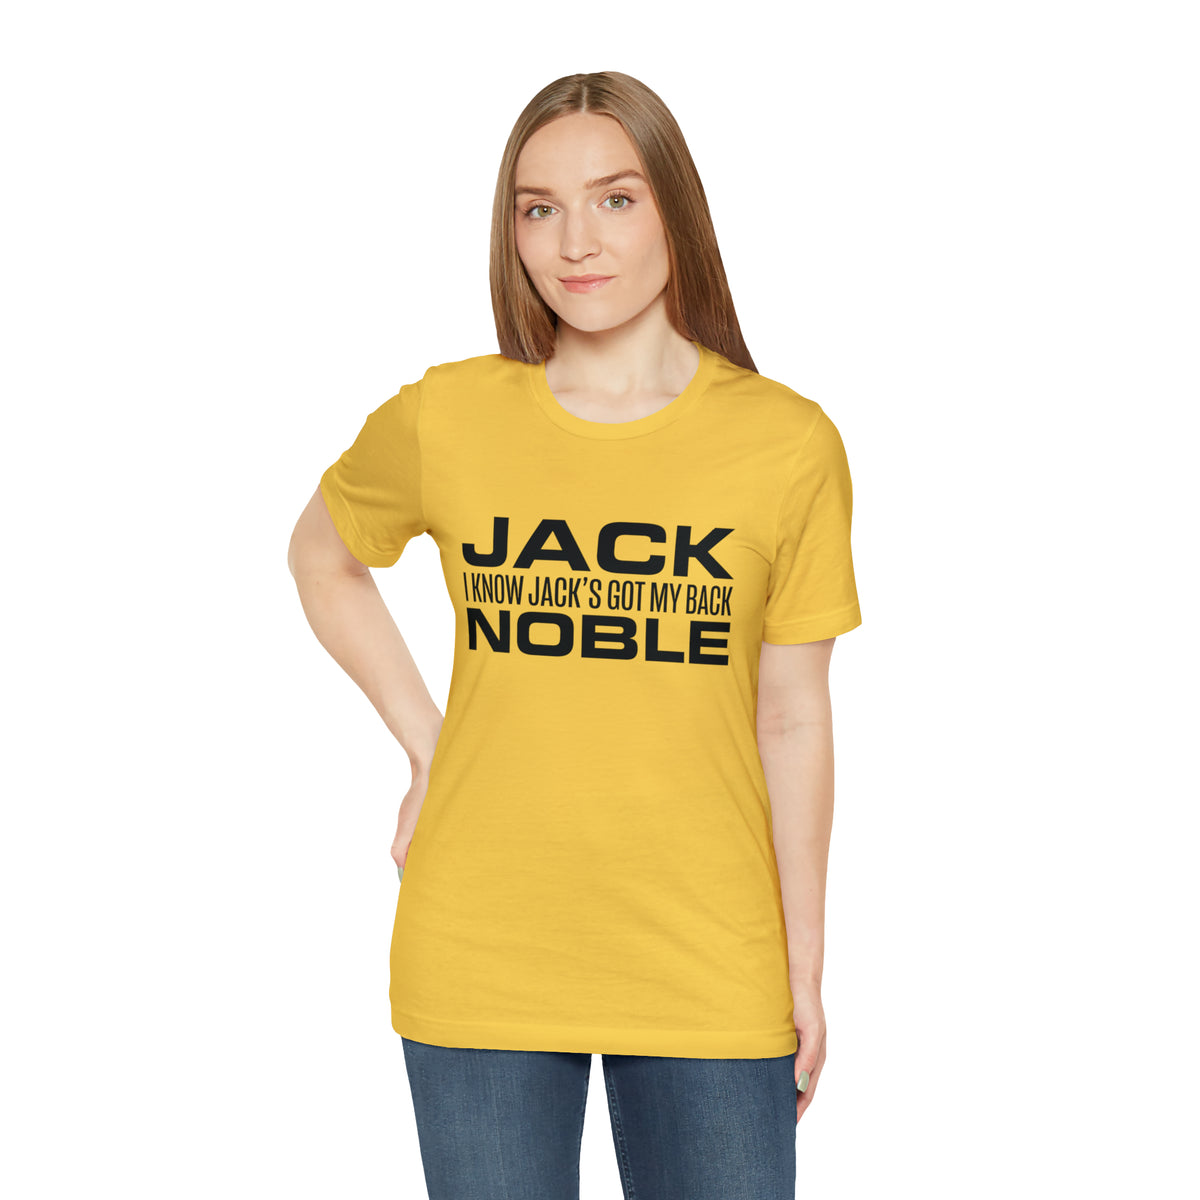 Jack Noble Has My Back T-Shirt